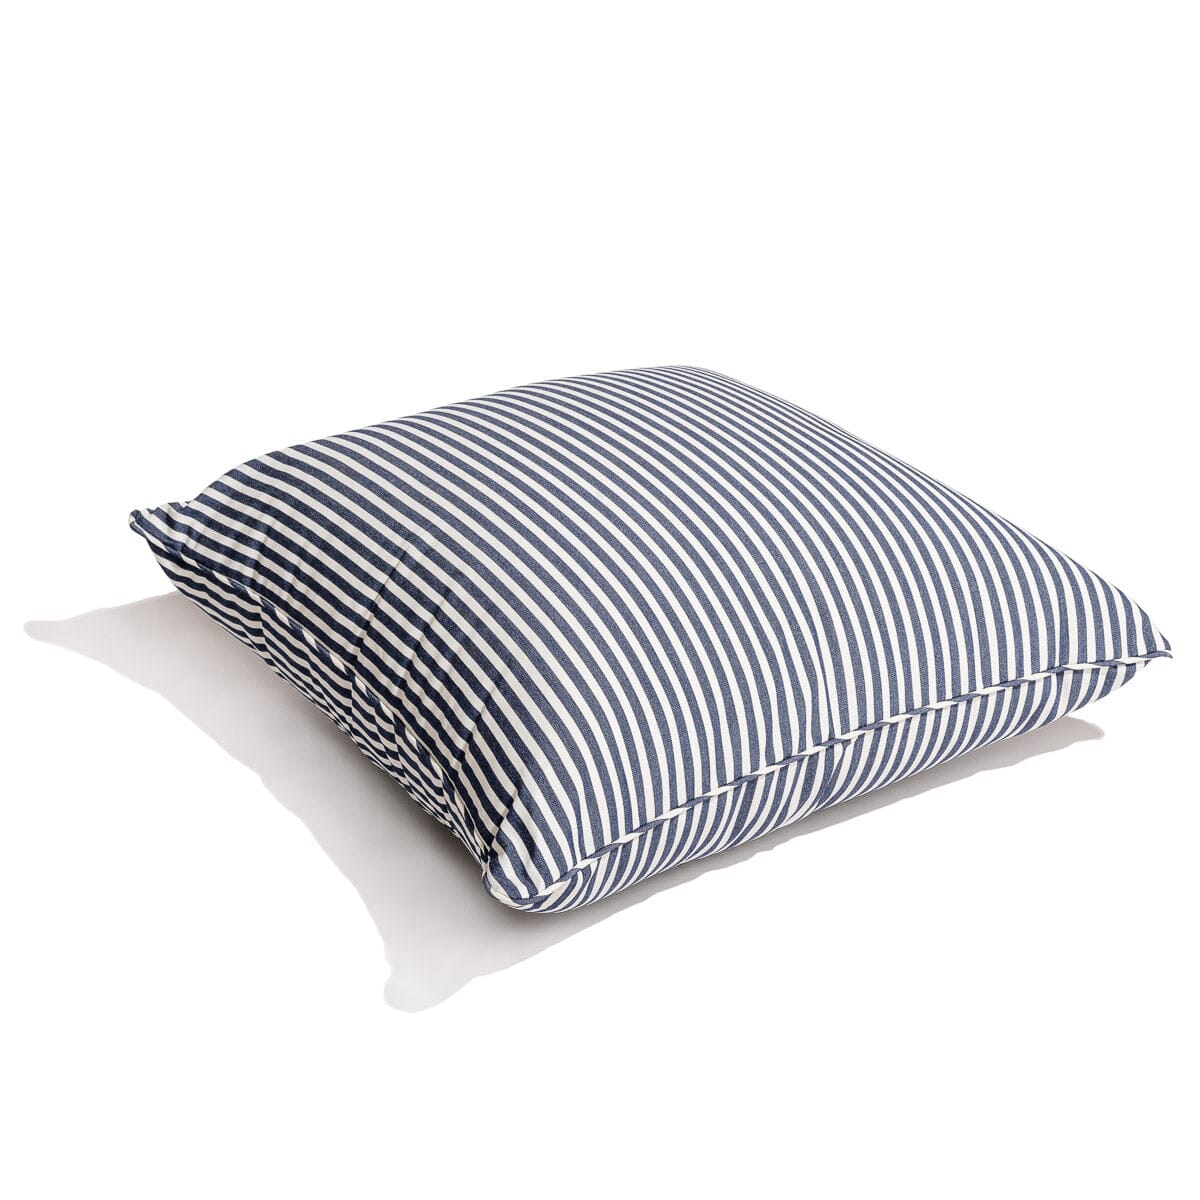 The Euro Throw Pillow - Lauren's Navy Stripe Euro Throw Pillow Business & Pleasure Co 